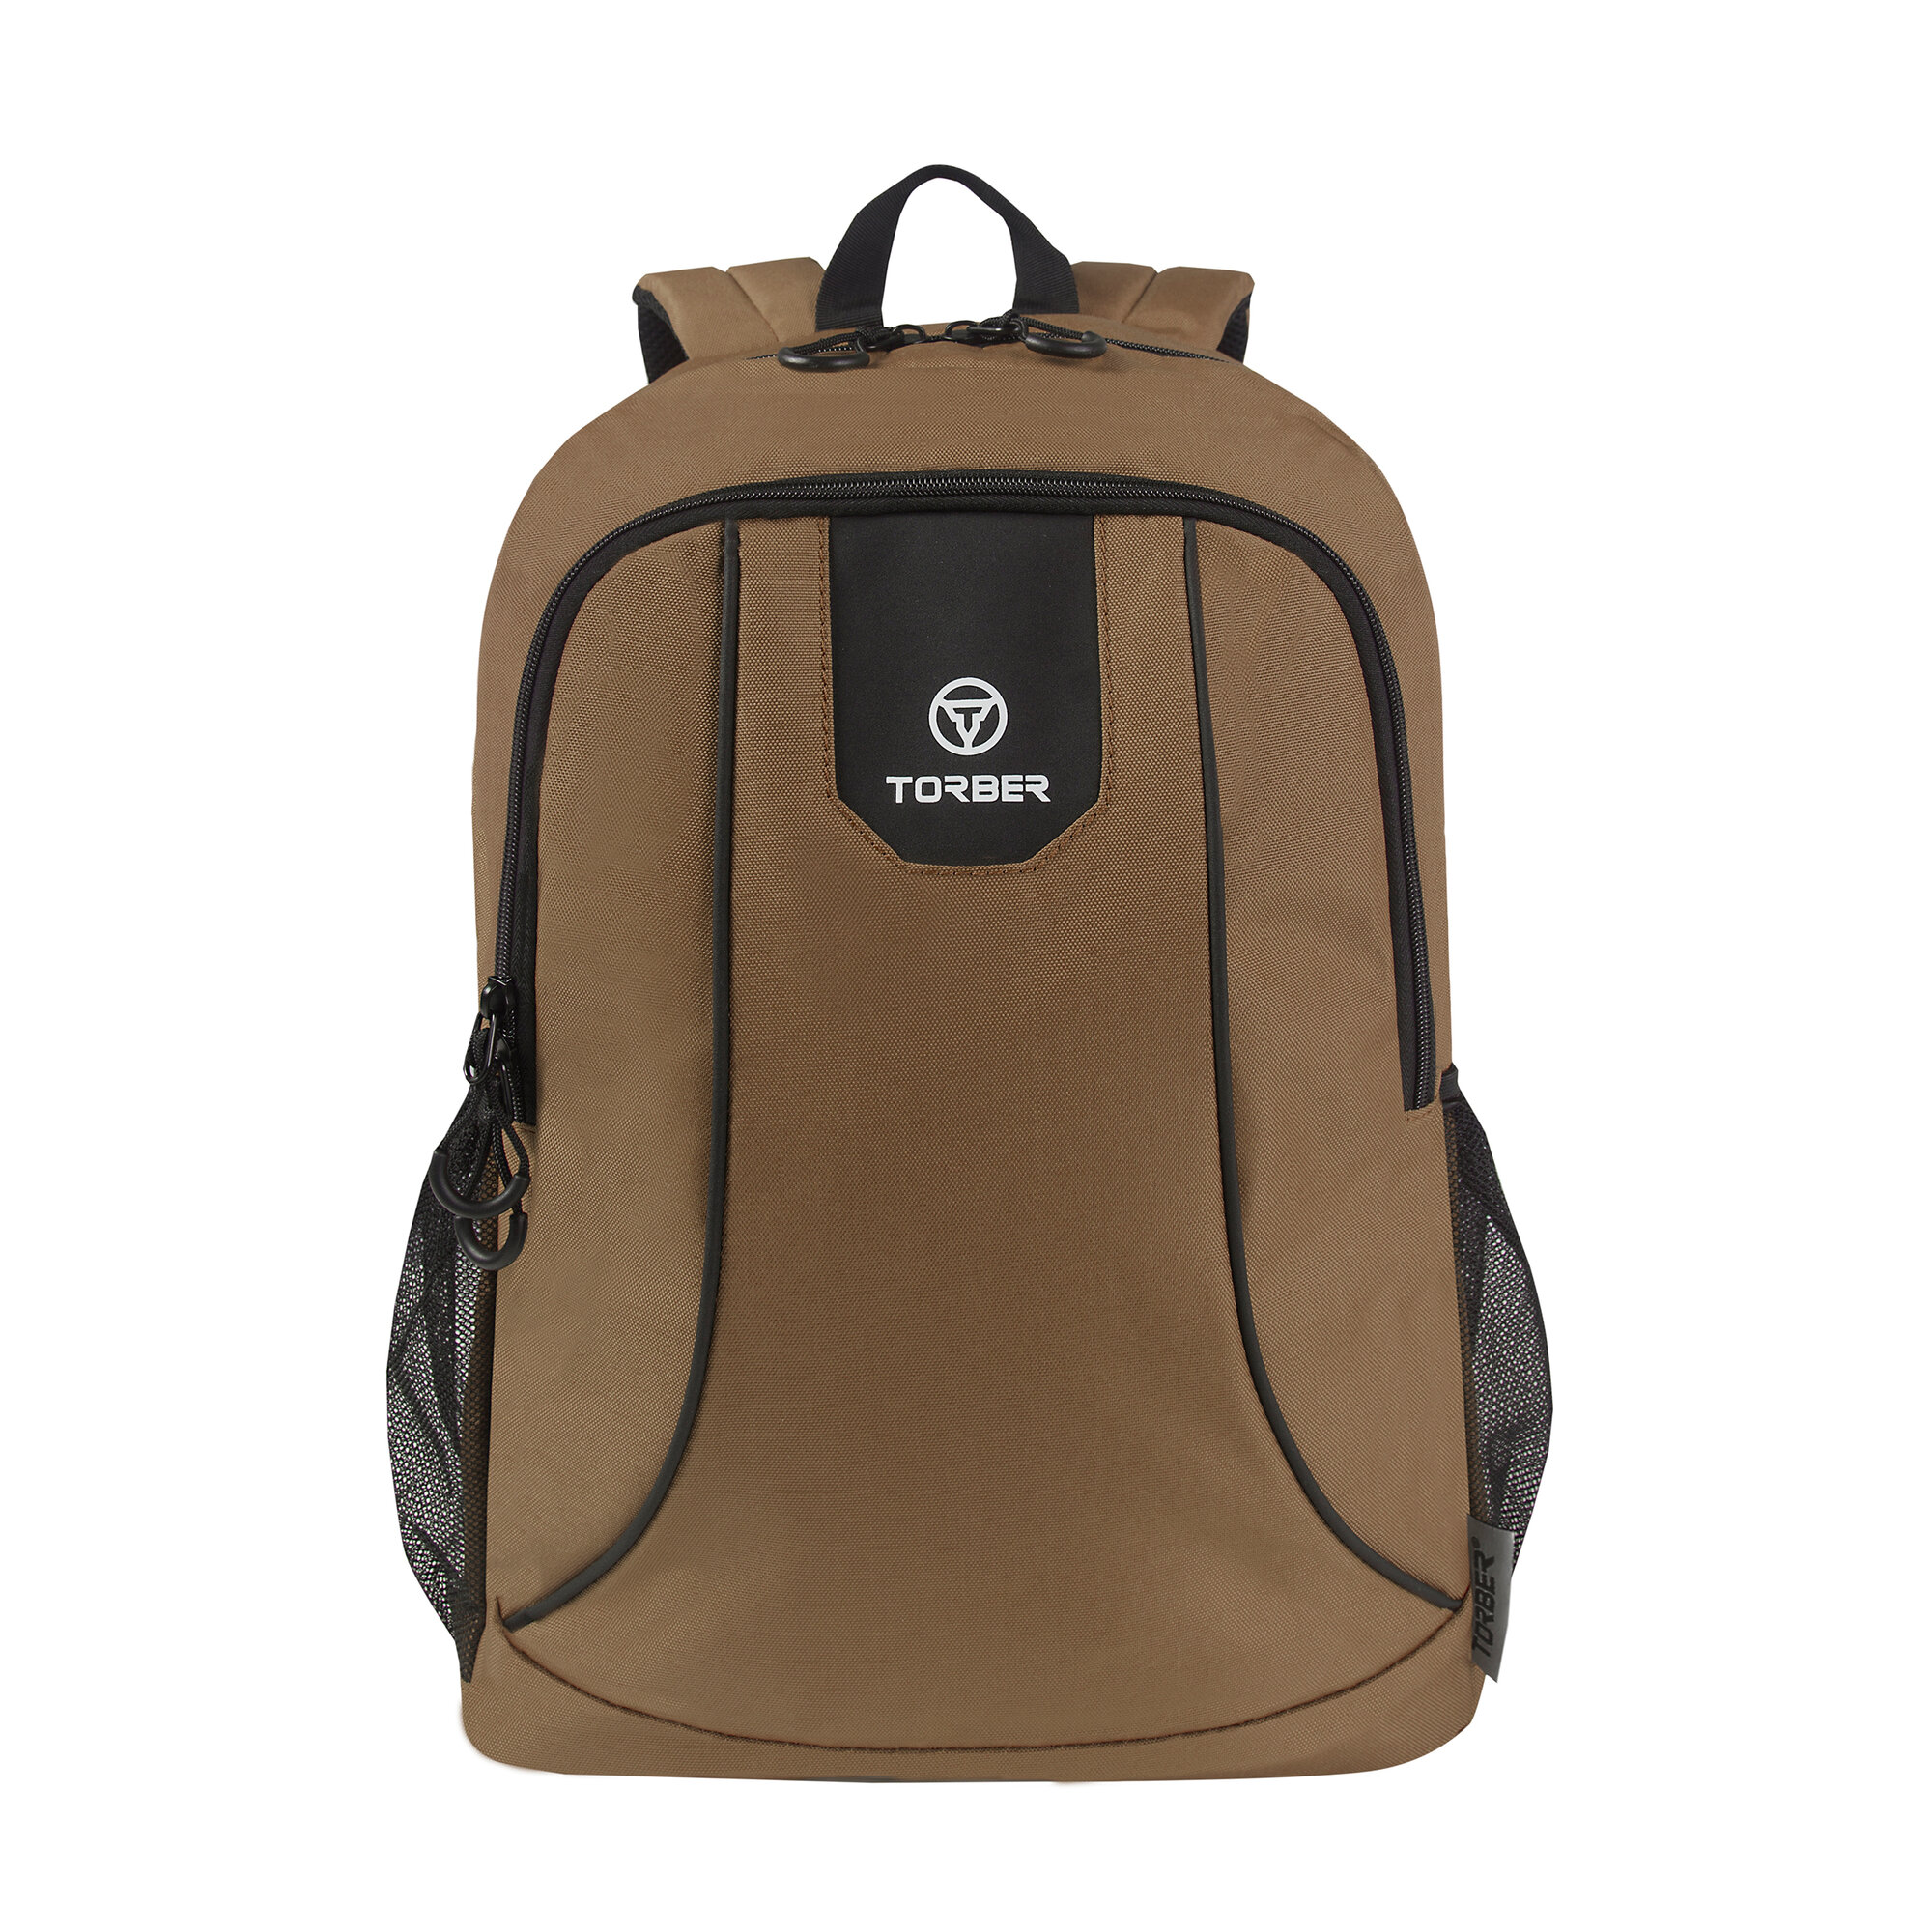 Рюкзак TORBER ROCKIT с отделением для ноутбука 15,6", коричневый, T8283-BRW